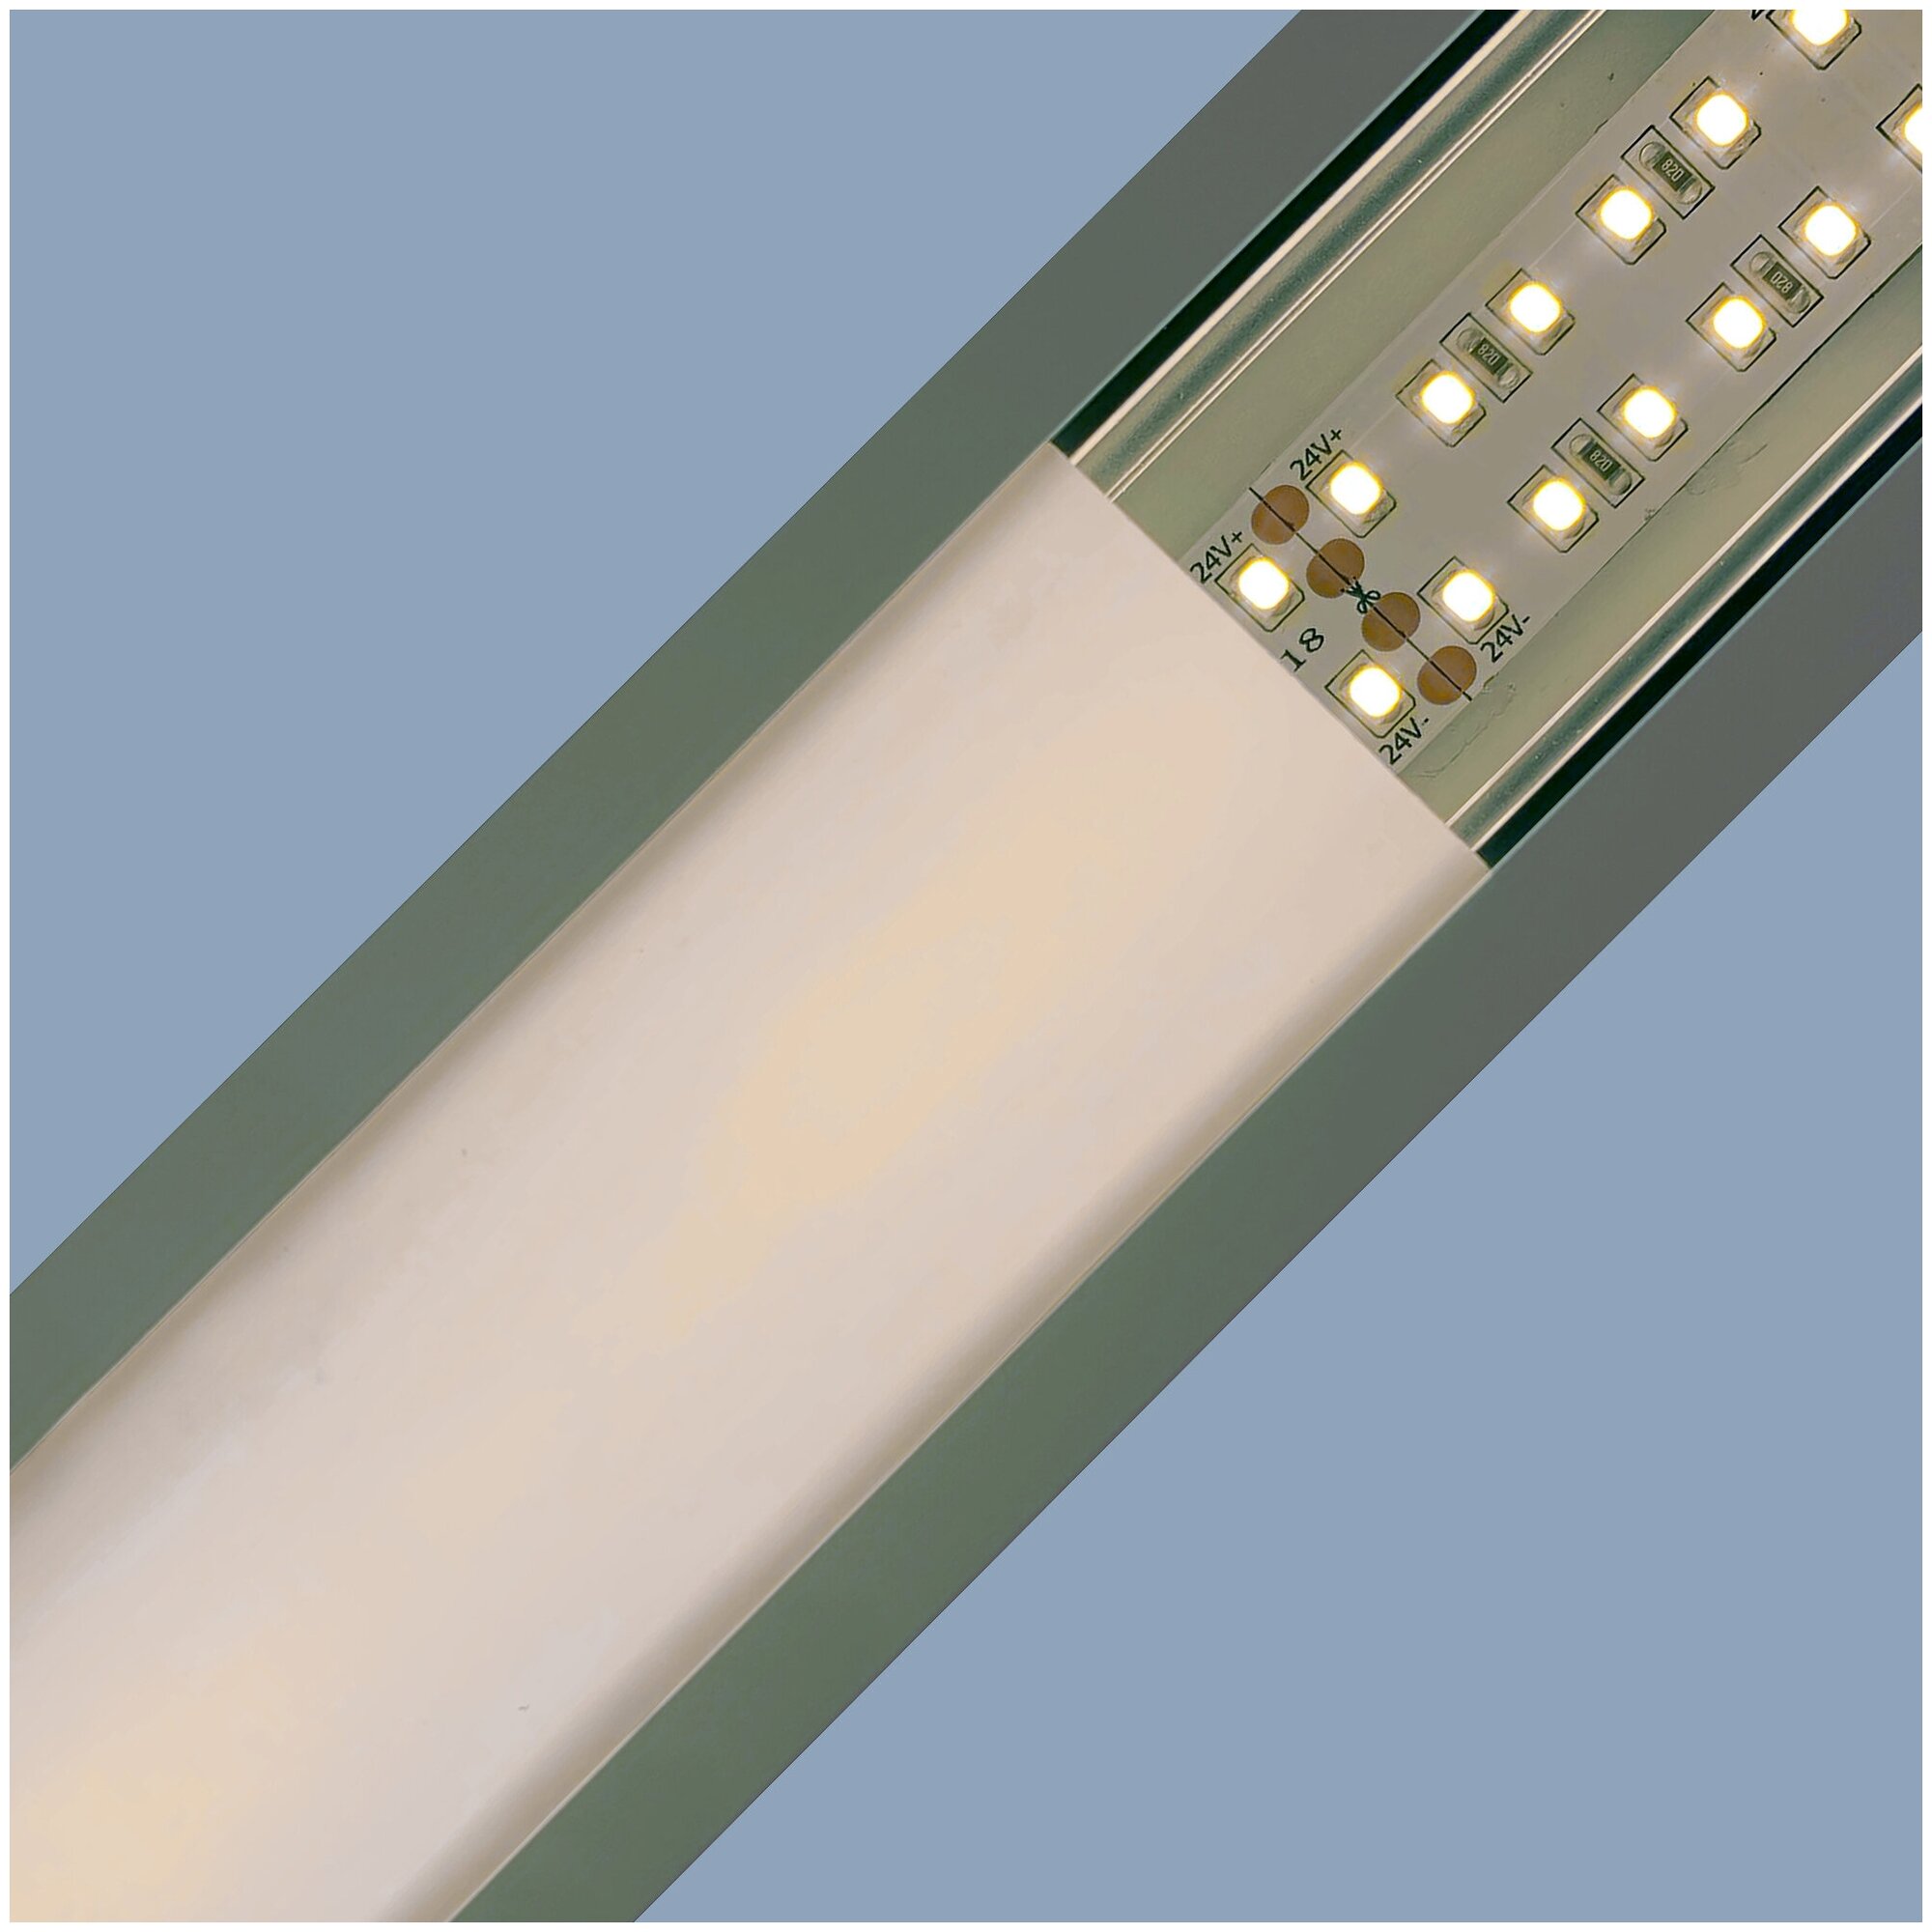 Круглый алюминиевый профиль для установки светодиодной ленты с матовым белым рассеивателем / Профиль для накладного монтажа LED ленты шириной до 10 мм / серебро / 1000х18.3х15.6 мм / IP44 / 2 заглушки /08-17